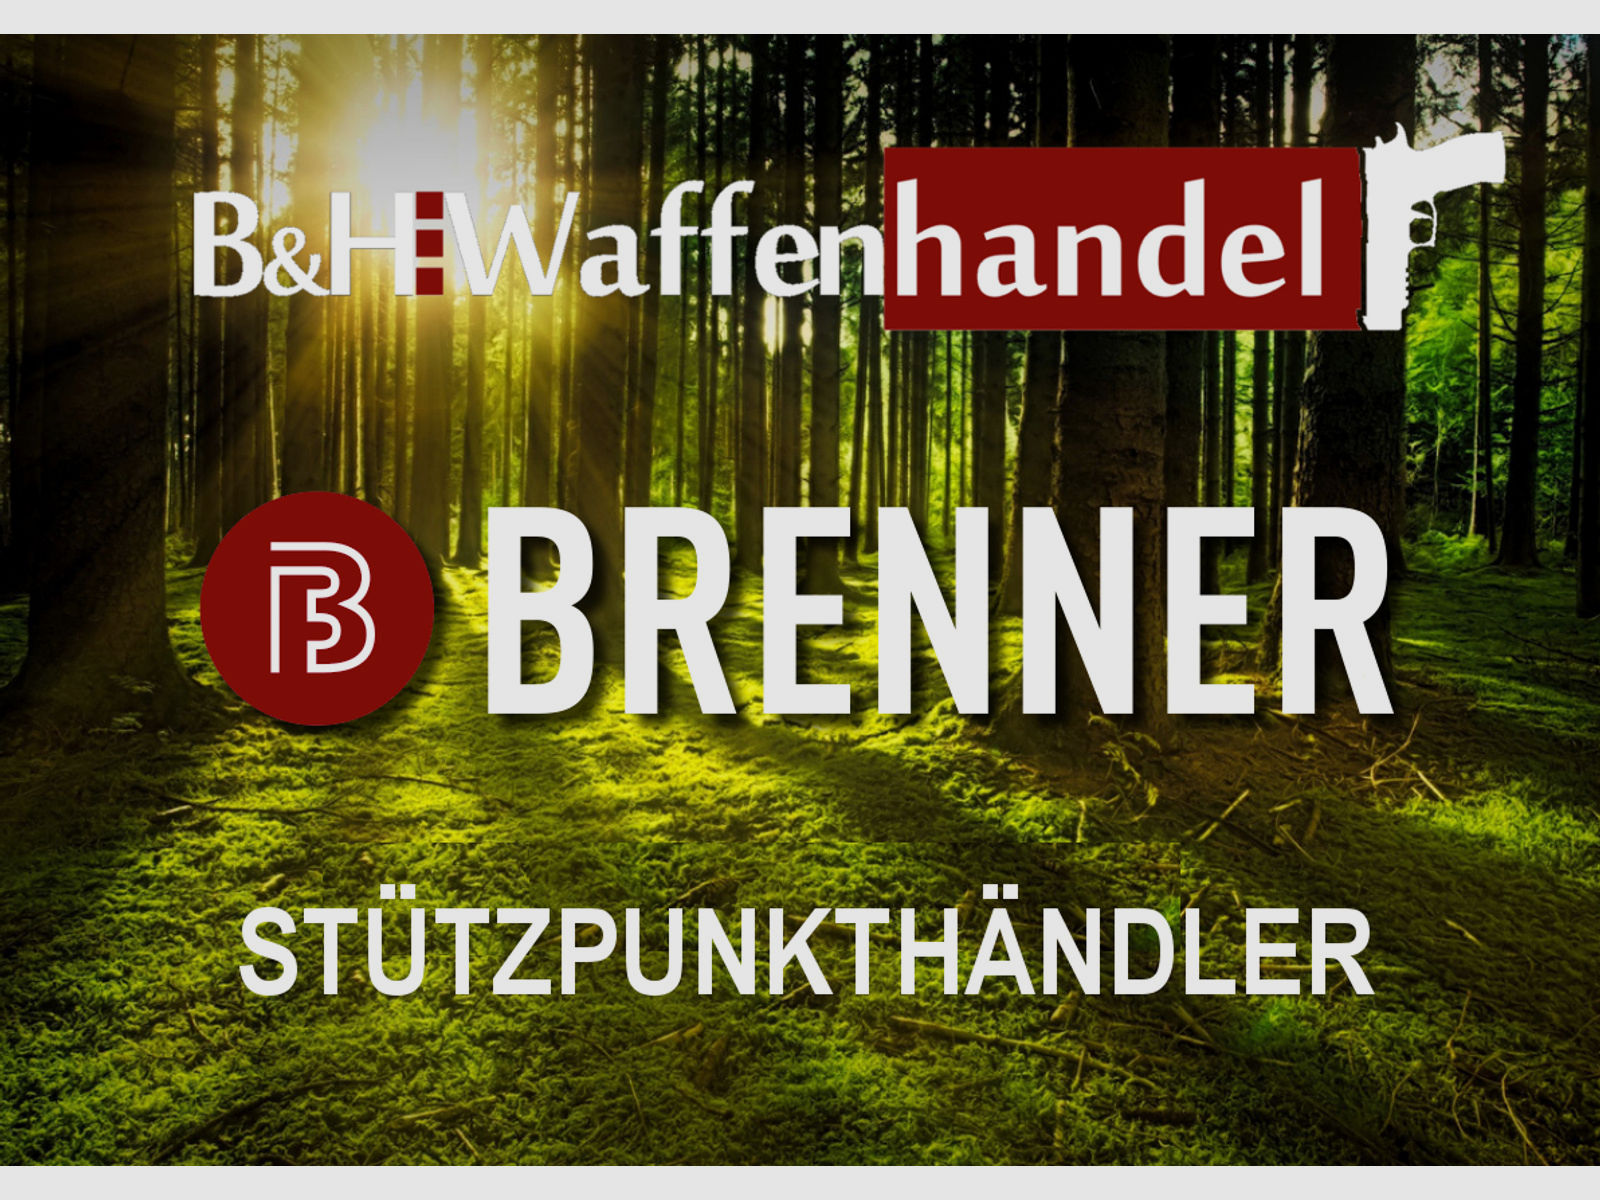 Neu: Brenner BR20 B&H Prohunter Lochschaft Büchse mit verstellbarer Wangenauflage (Schaftrücken) ideal für Jagd und Sport  